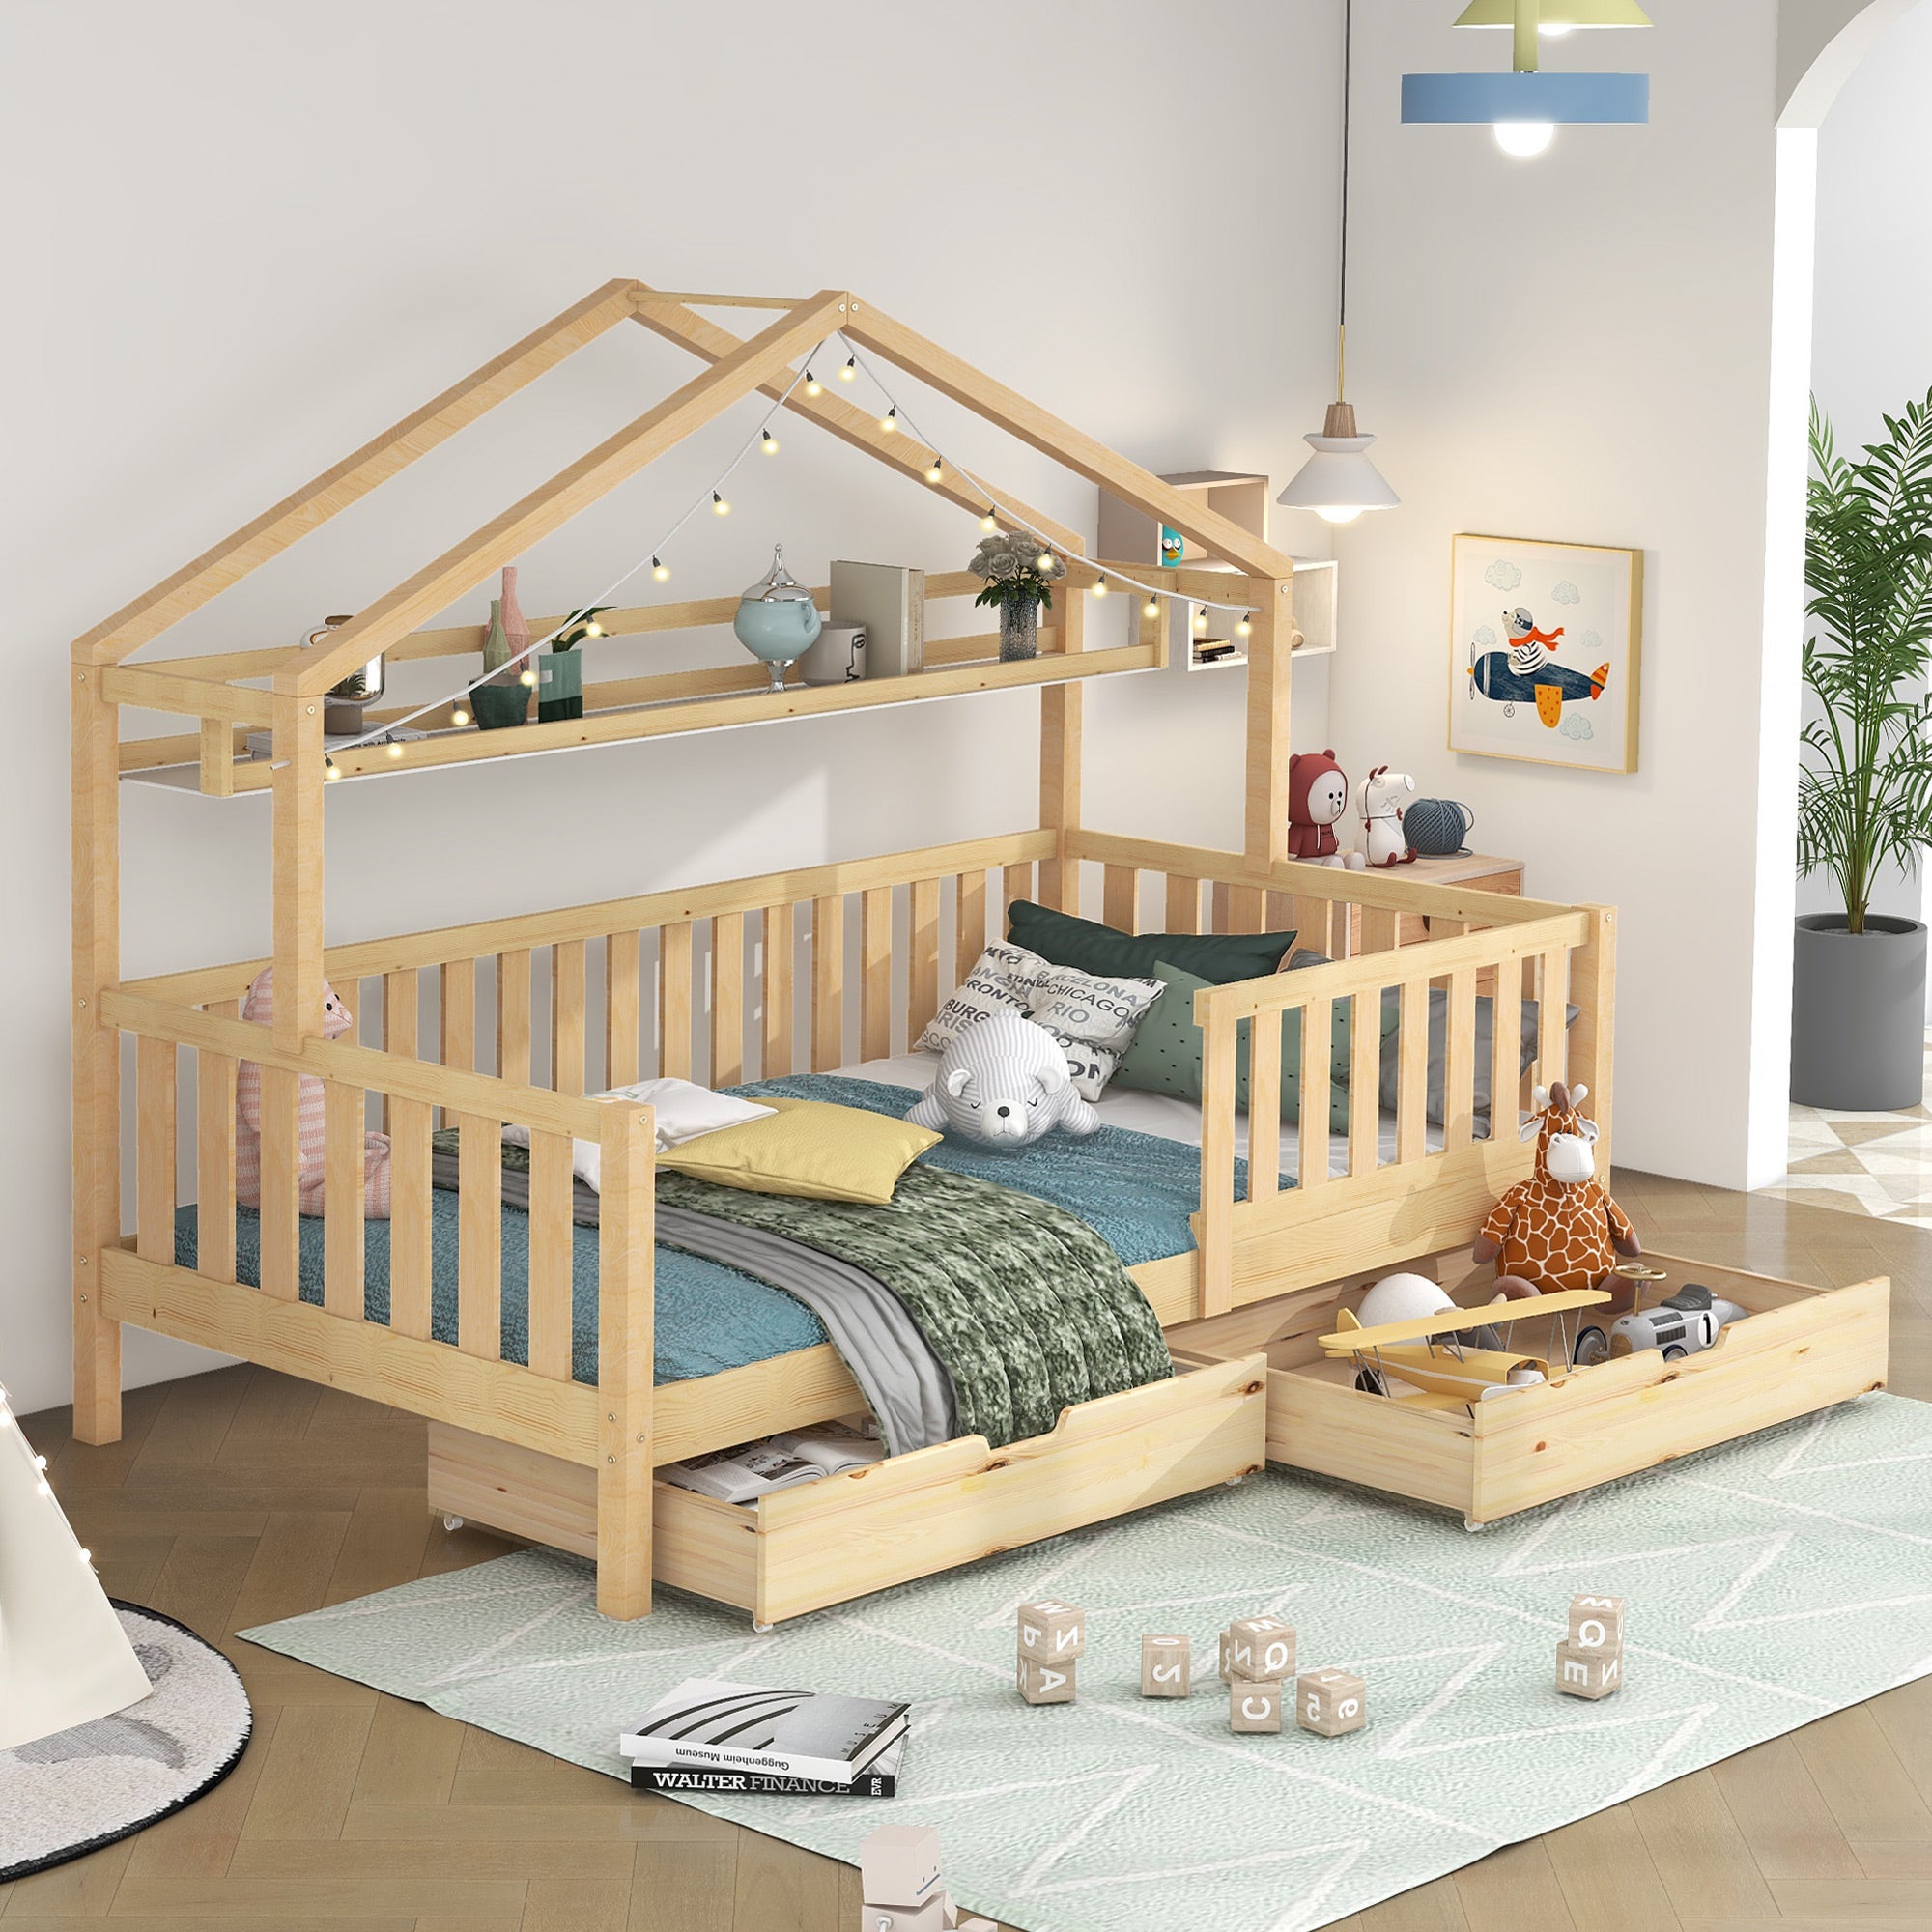 Letto simply, la cameretta per bambini in stile minimal - Baby Wood